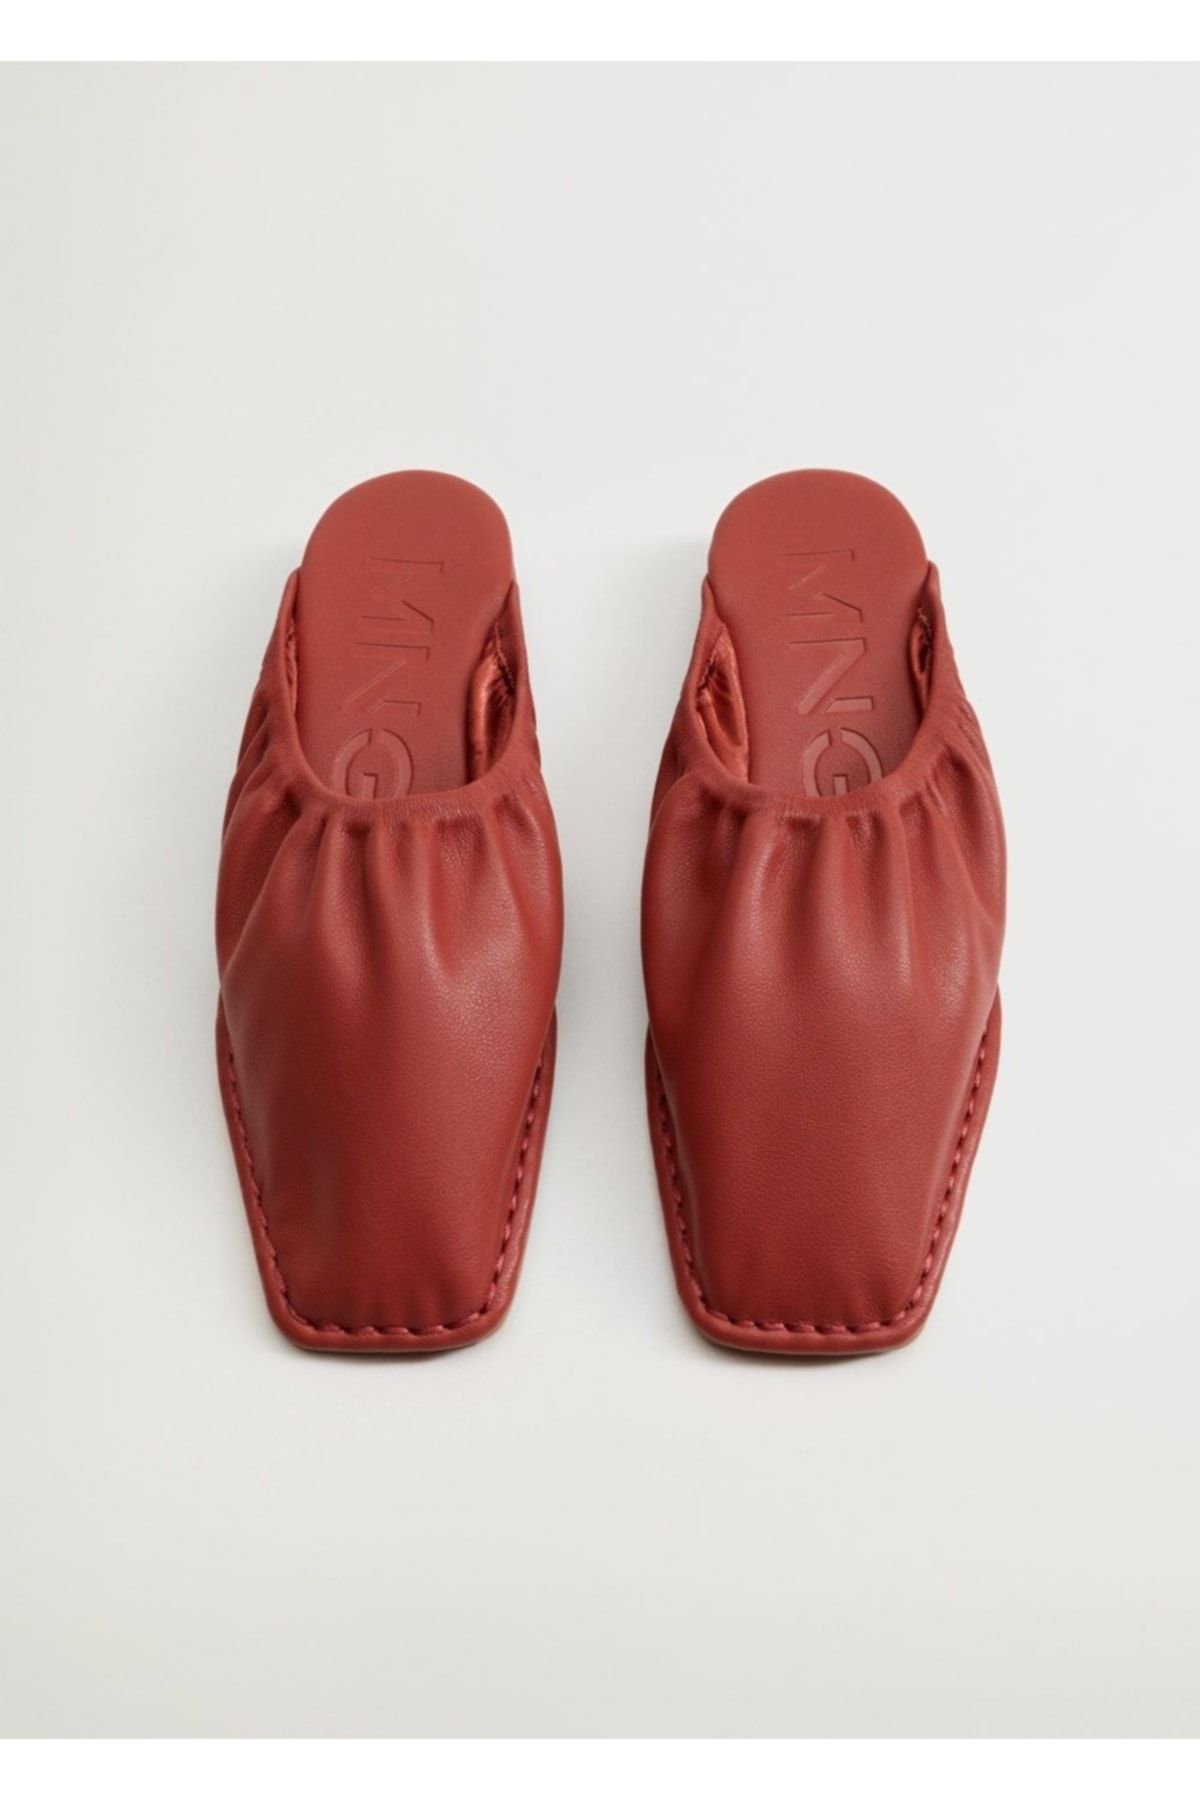 MANGO Kadın Kırmızı Dolgu Topuklu Büzgülü Sandalet